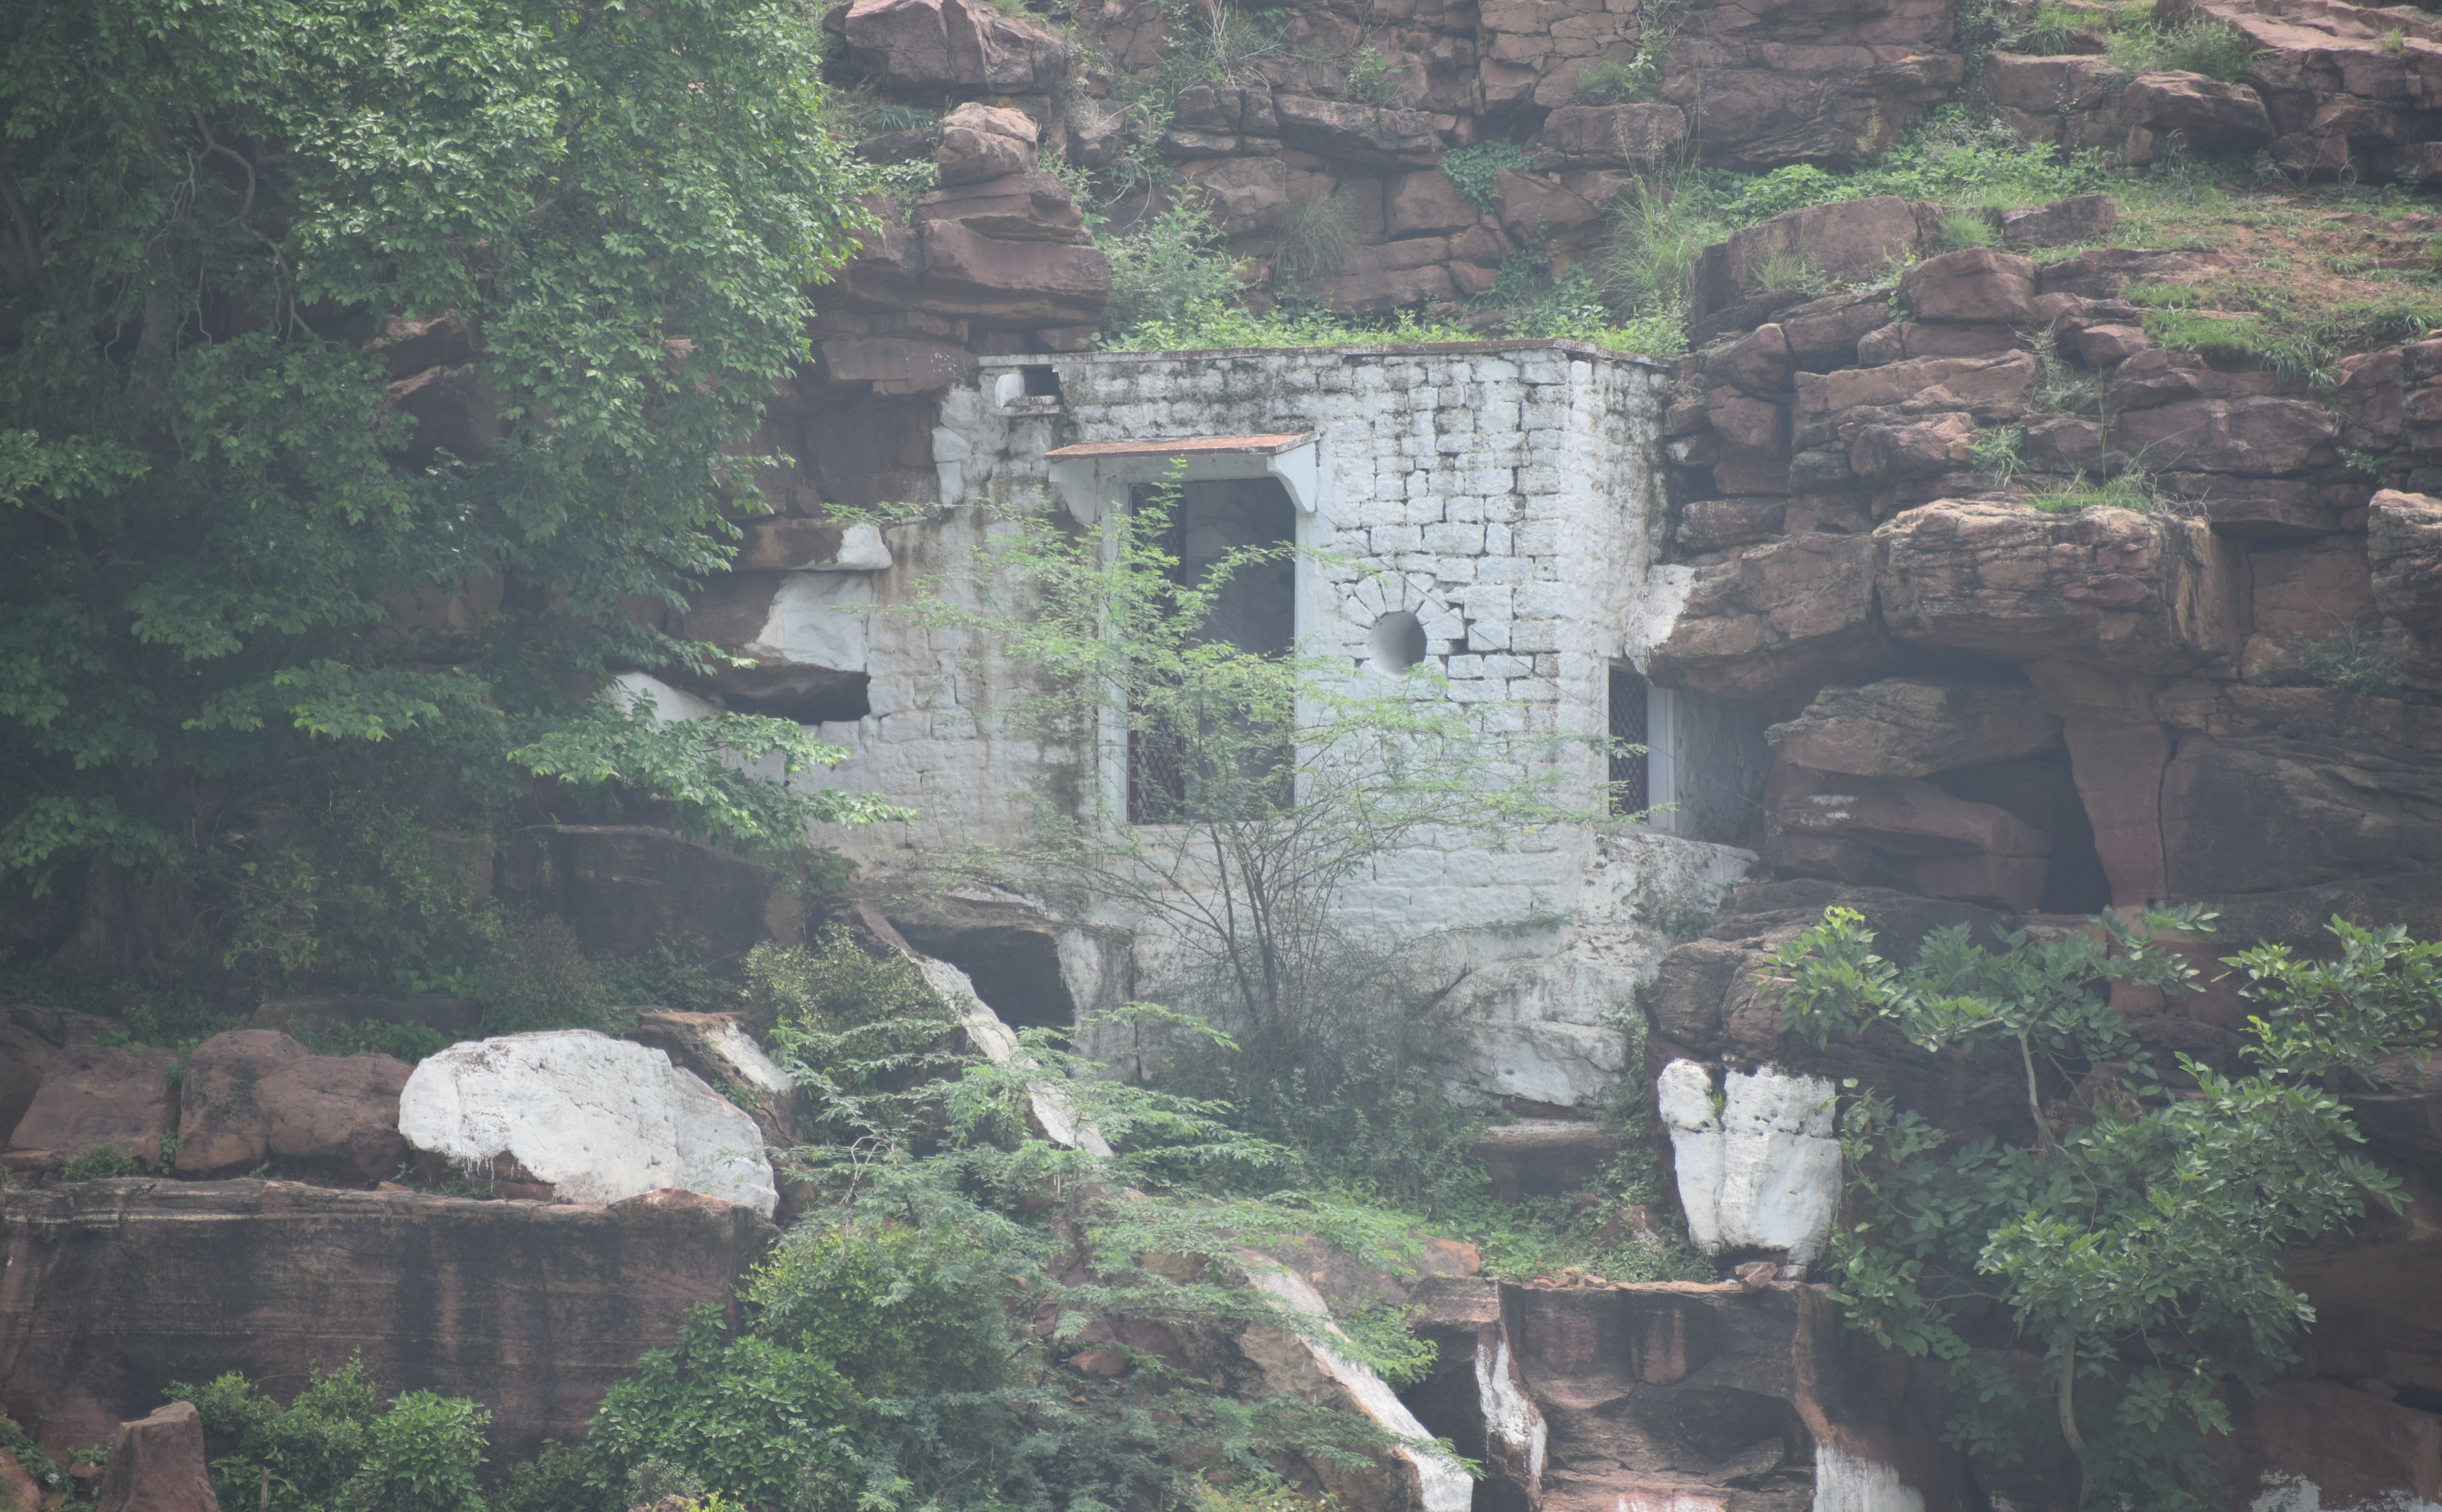  Lord Shri Krishna had made Kaliyavan devoured in this cave located in Dhaulpur